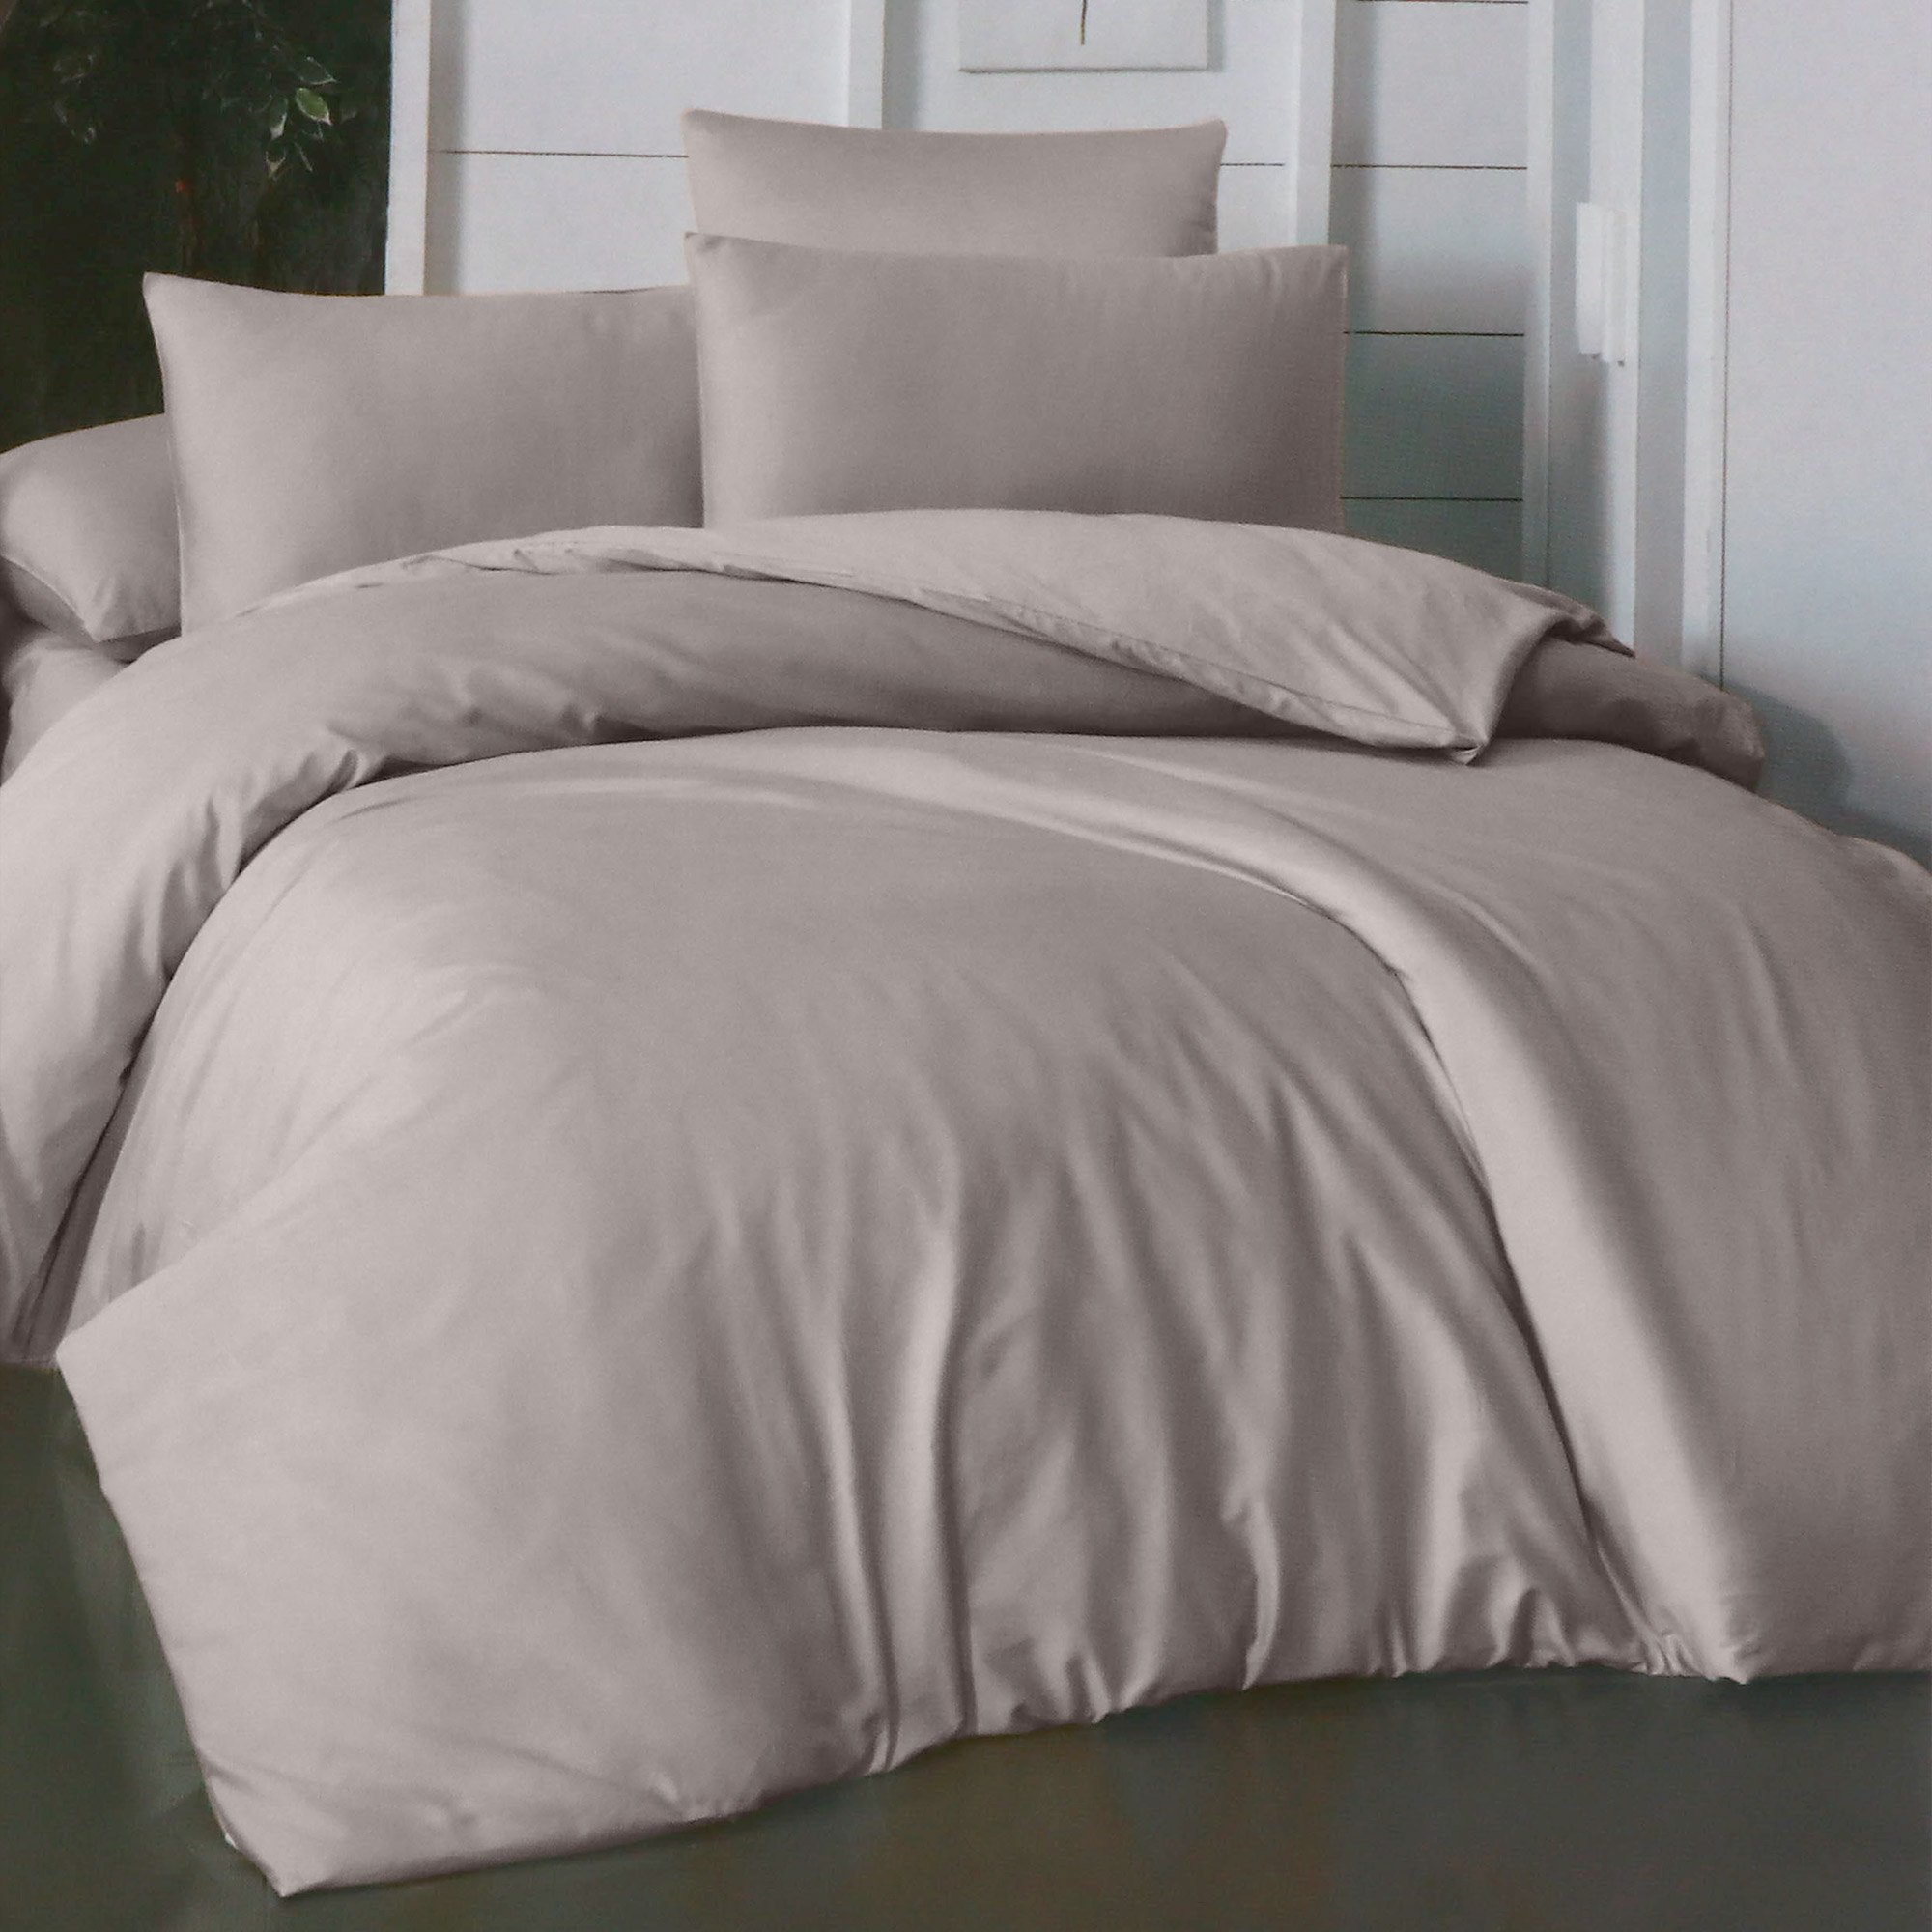 Комплект постельного белья La Besse Ранфорс тёмно-серый Кинг сайз, размер Кинг сайз - фото 1